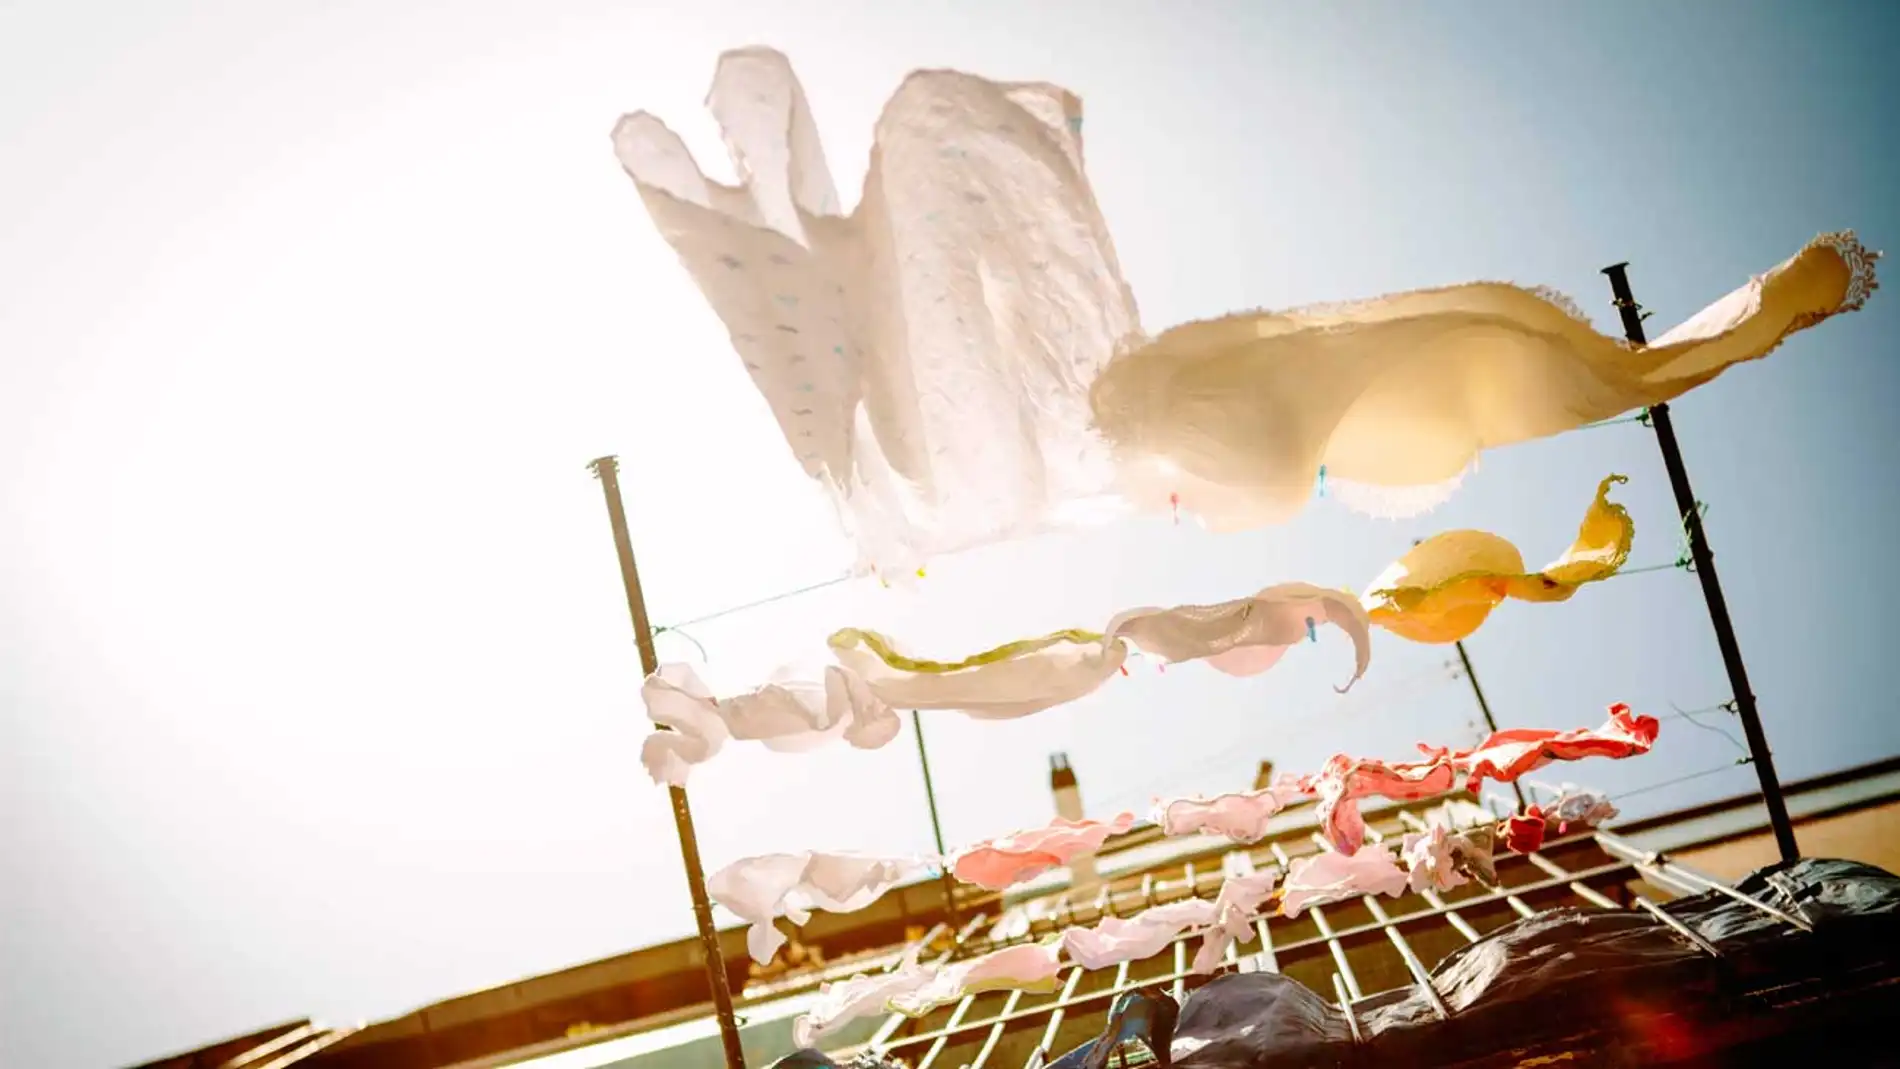 Tendederos eléctricos: la solución para secar la ropa en los días